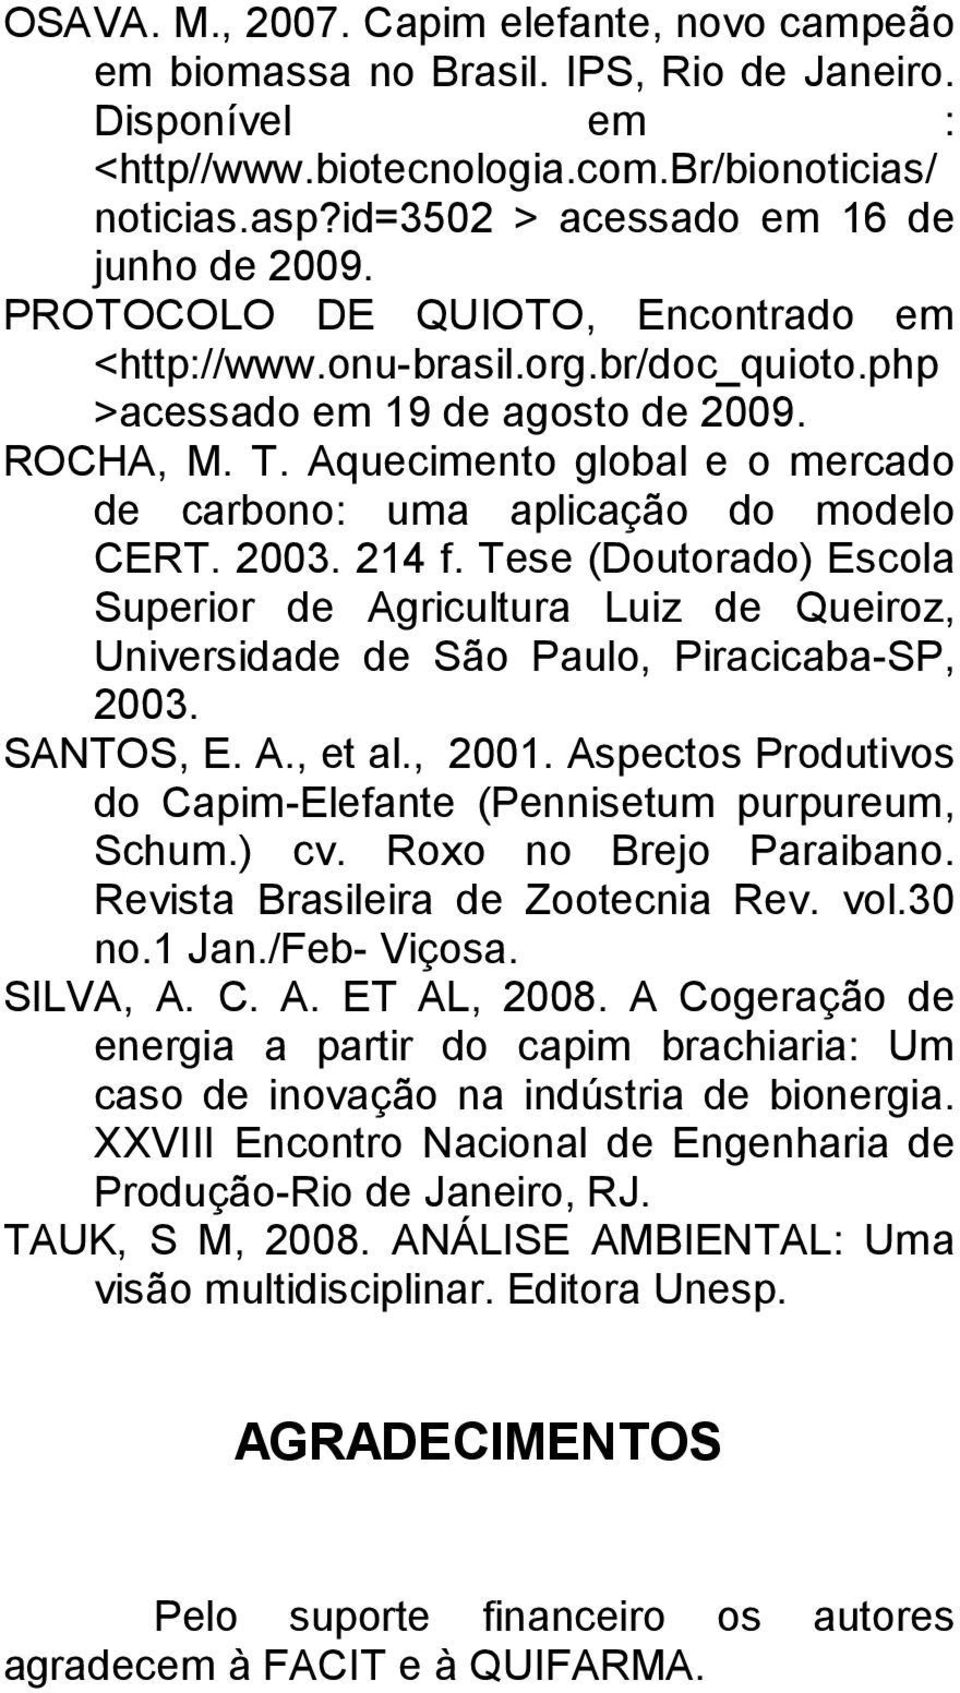 Aquecimento global e o mercado de carbono: uma aplicação do modelo CERT. 2003. 214 f. Tese (Doutorado) Escola Superior de Agricultura Luiz de Queiroz, Universidade de São Paulo, Piracicaba-SP, 2003.